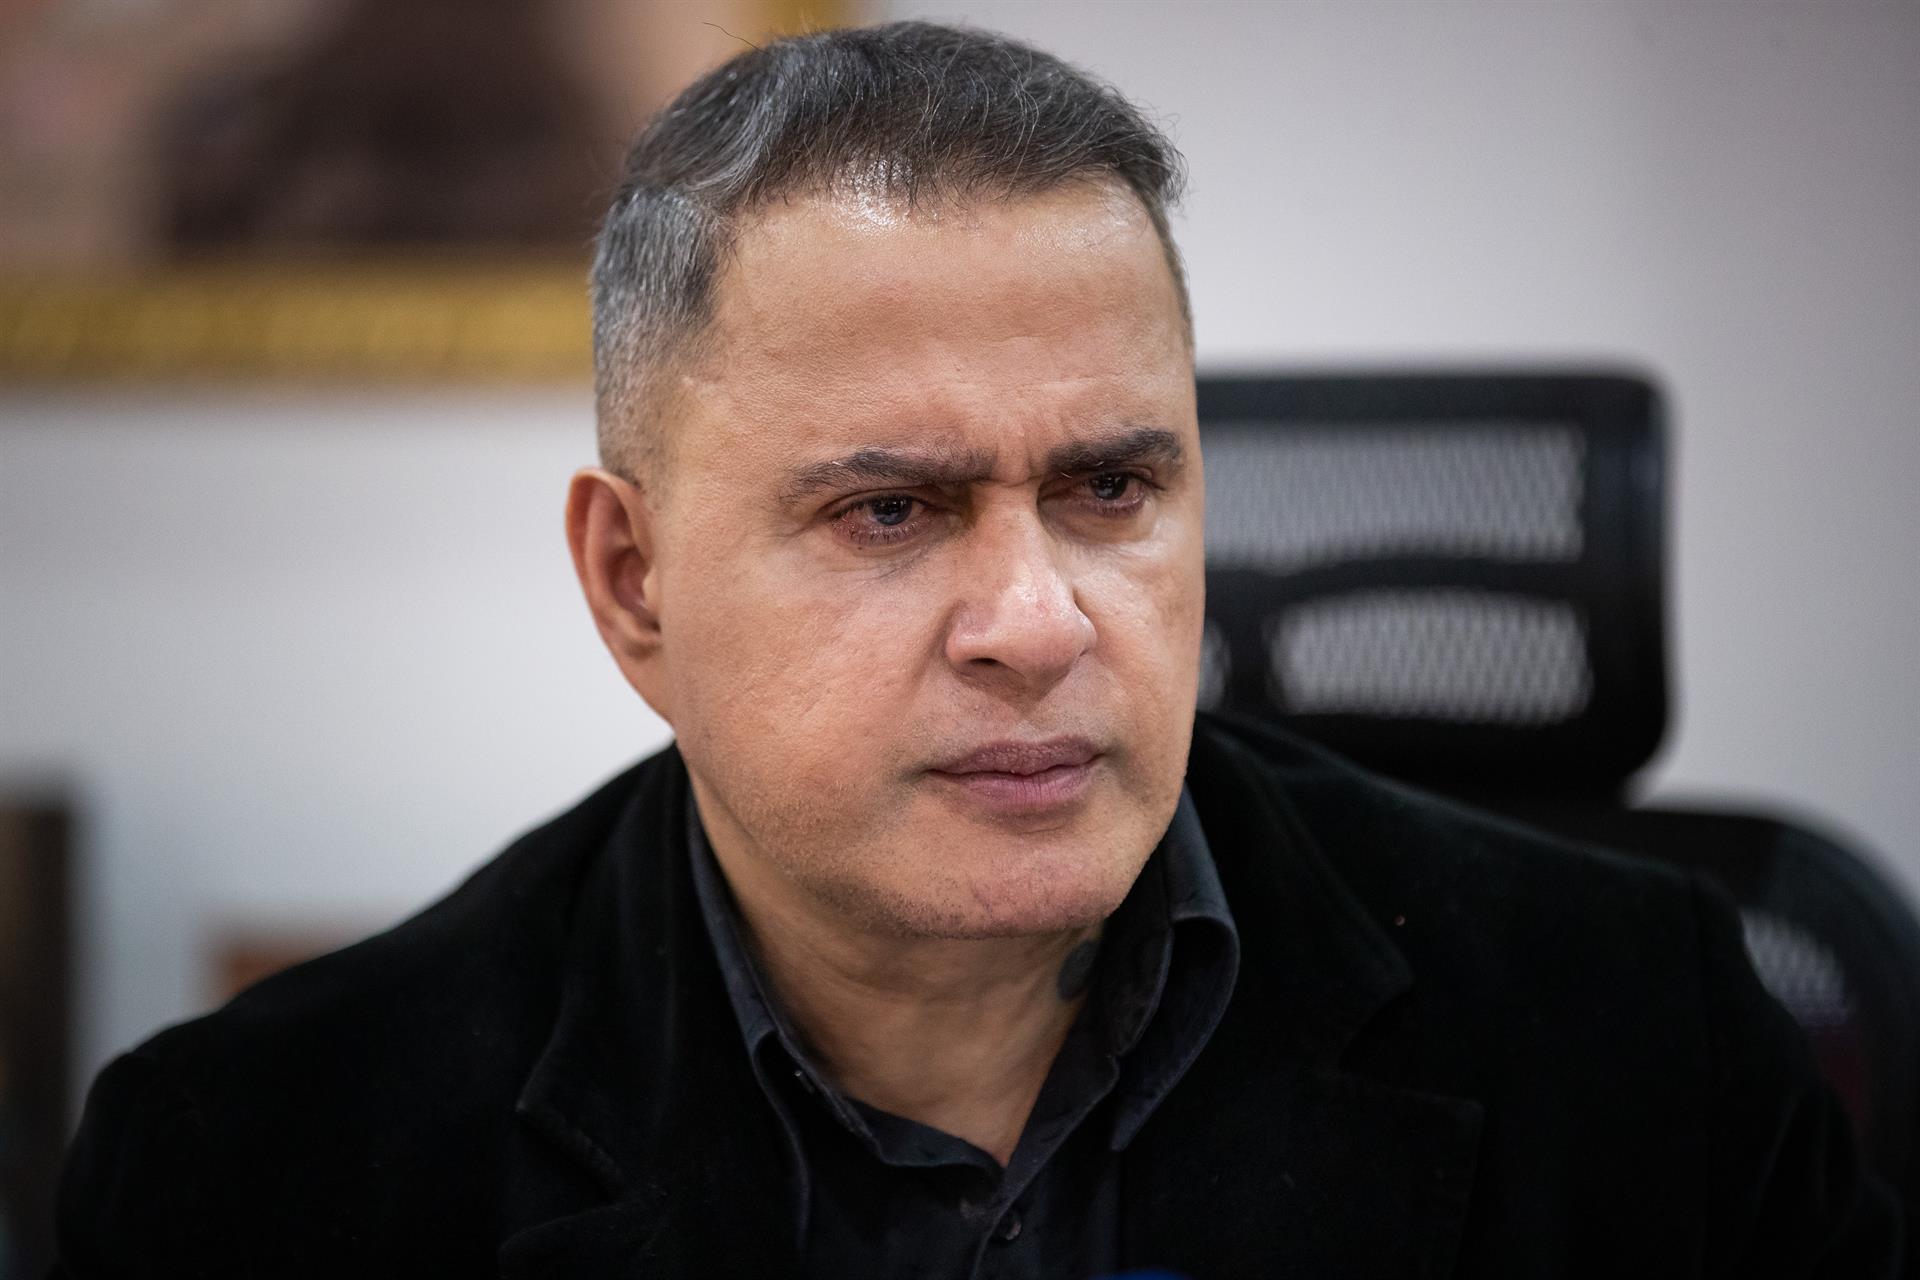 La investigación contra Tareck El Aissami se basa en un testigo, según Saab